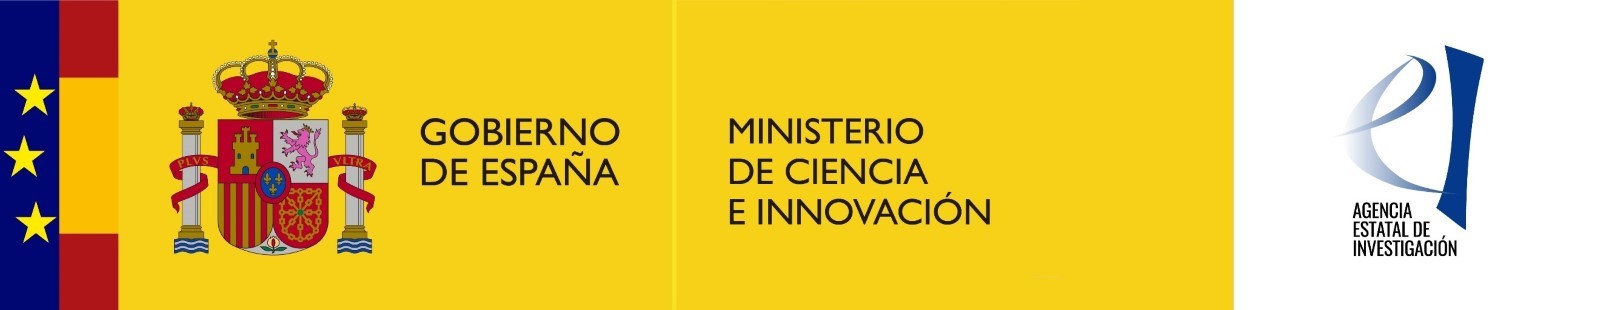 El proyecto ha sido financiado por el Ministerio de Ciencia e Innovación y la Agencia Estatal de Investigación. Convocatoria RETOS-COLABORACIÓN 2019 del Programa Estatal de Investigación, Desarrollo e Innovación Orientada a los Retos de la Sociedad, en el marco del Plan Estatal de Investigación Científica y Técnica y de Innovación 2017-2020.